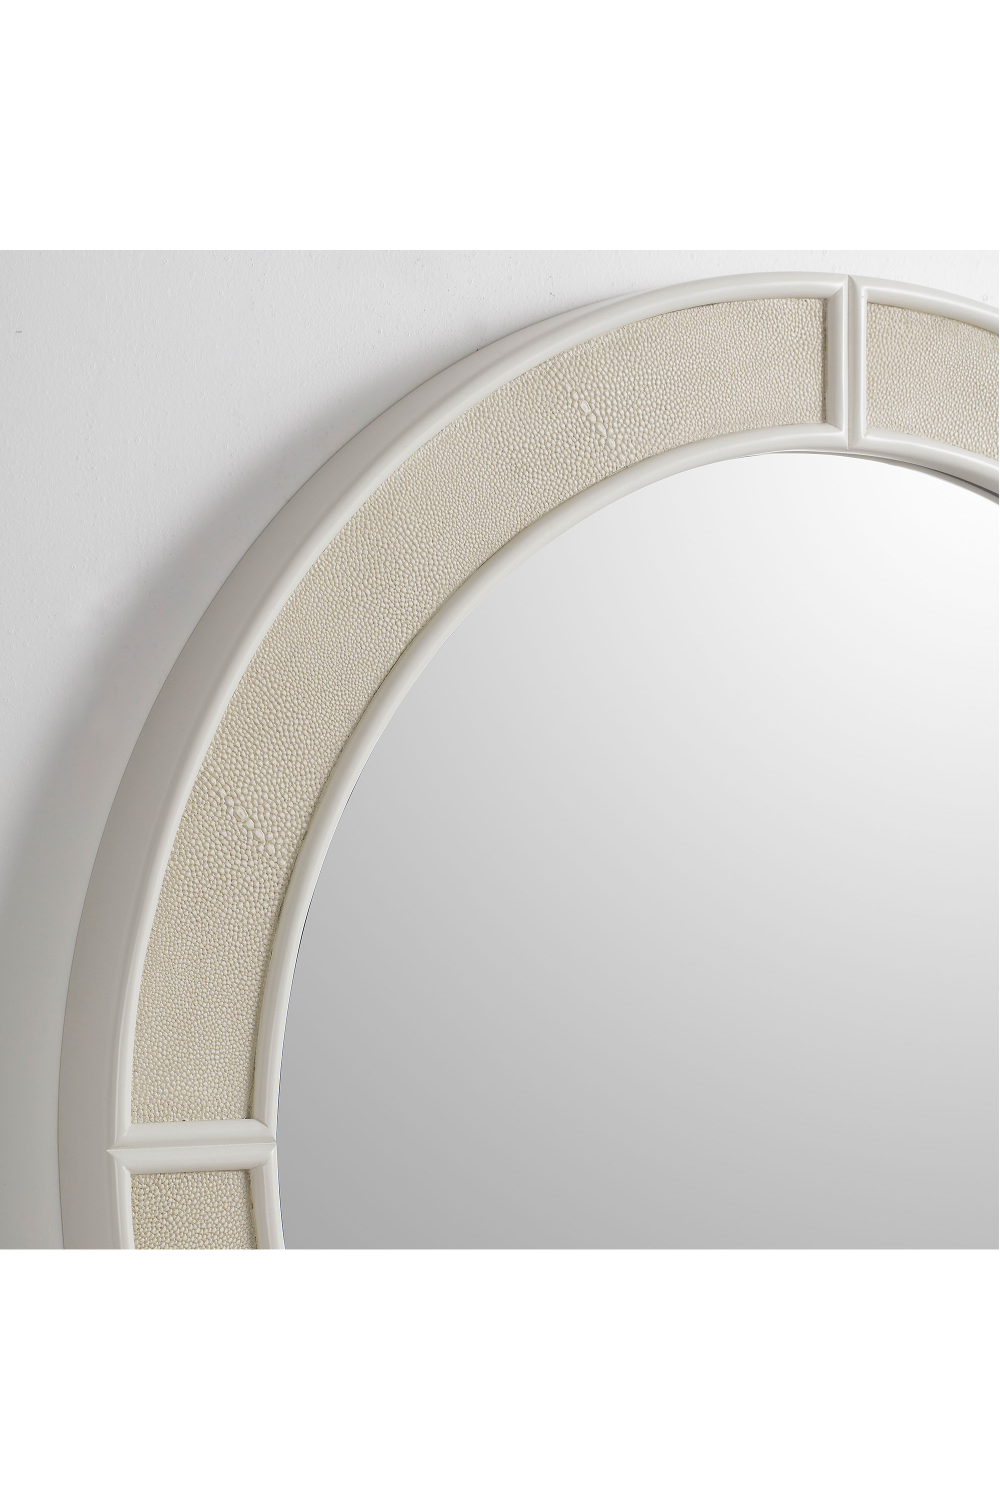 White Shagreen Round Mirror | Andrew Martin Alice | Oroa.com